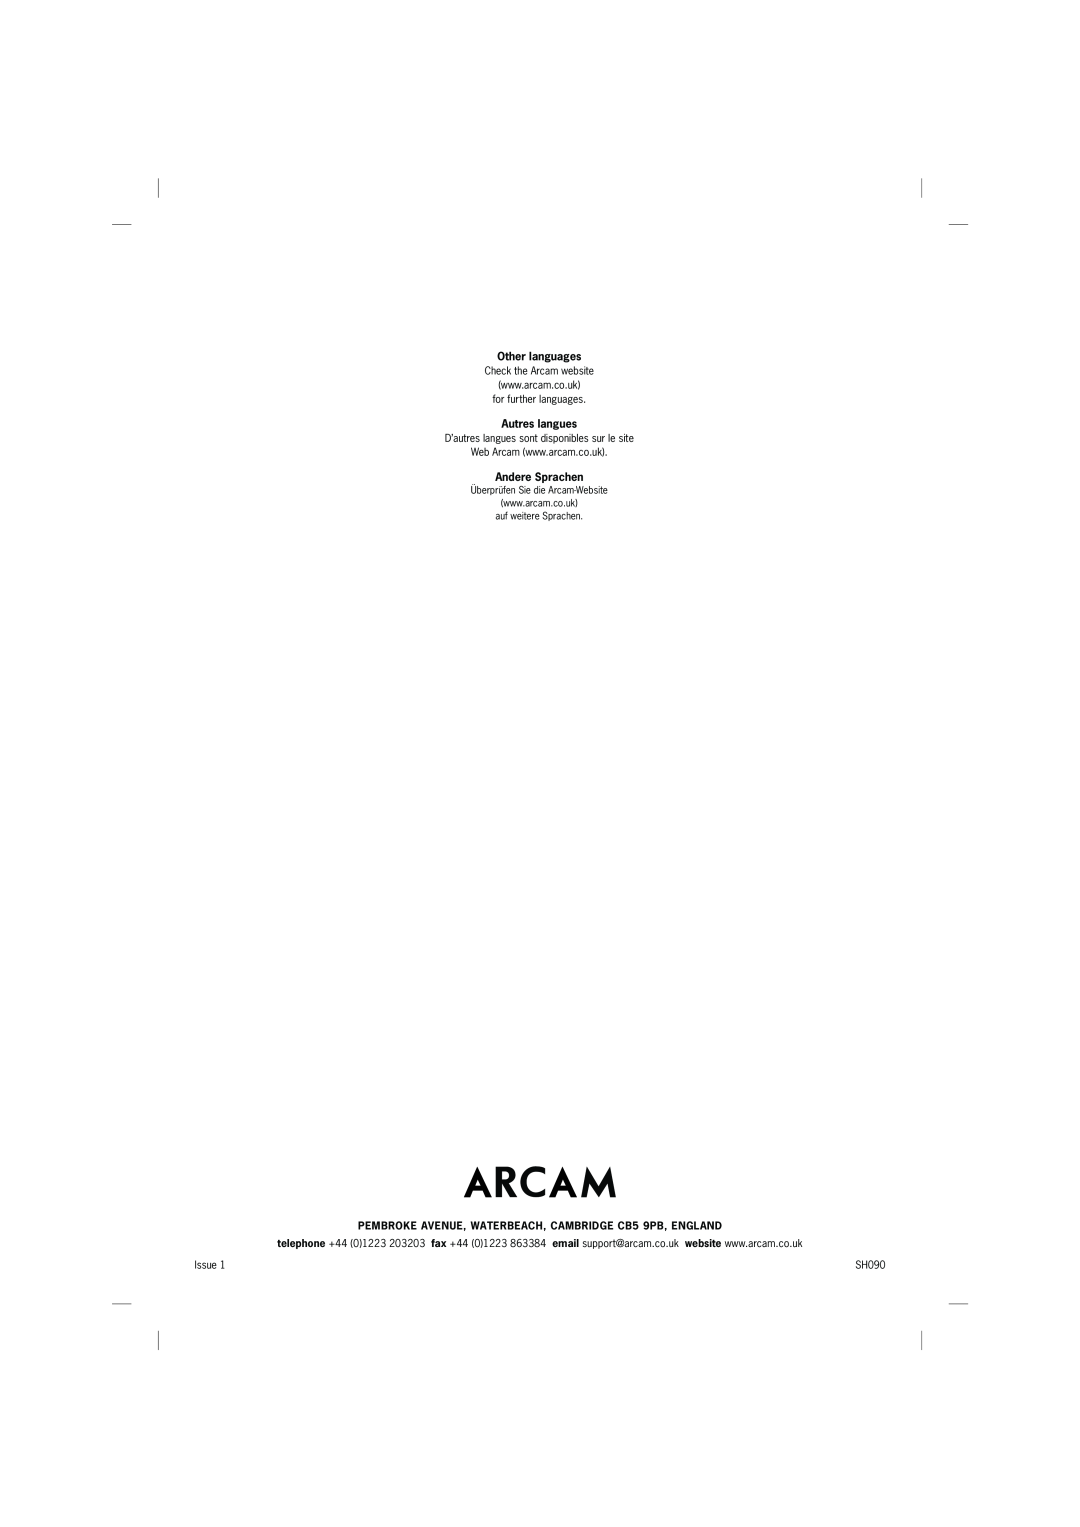 Arcam A75, P75, A65 manual Other languages, Autres langues, Andere Sprachen 